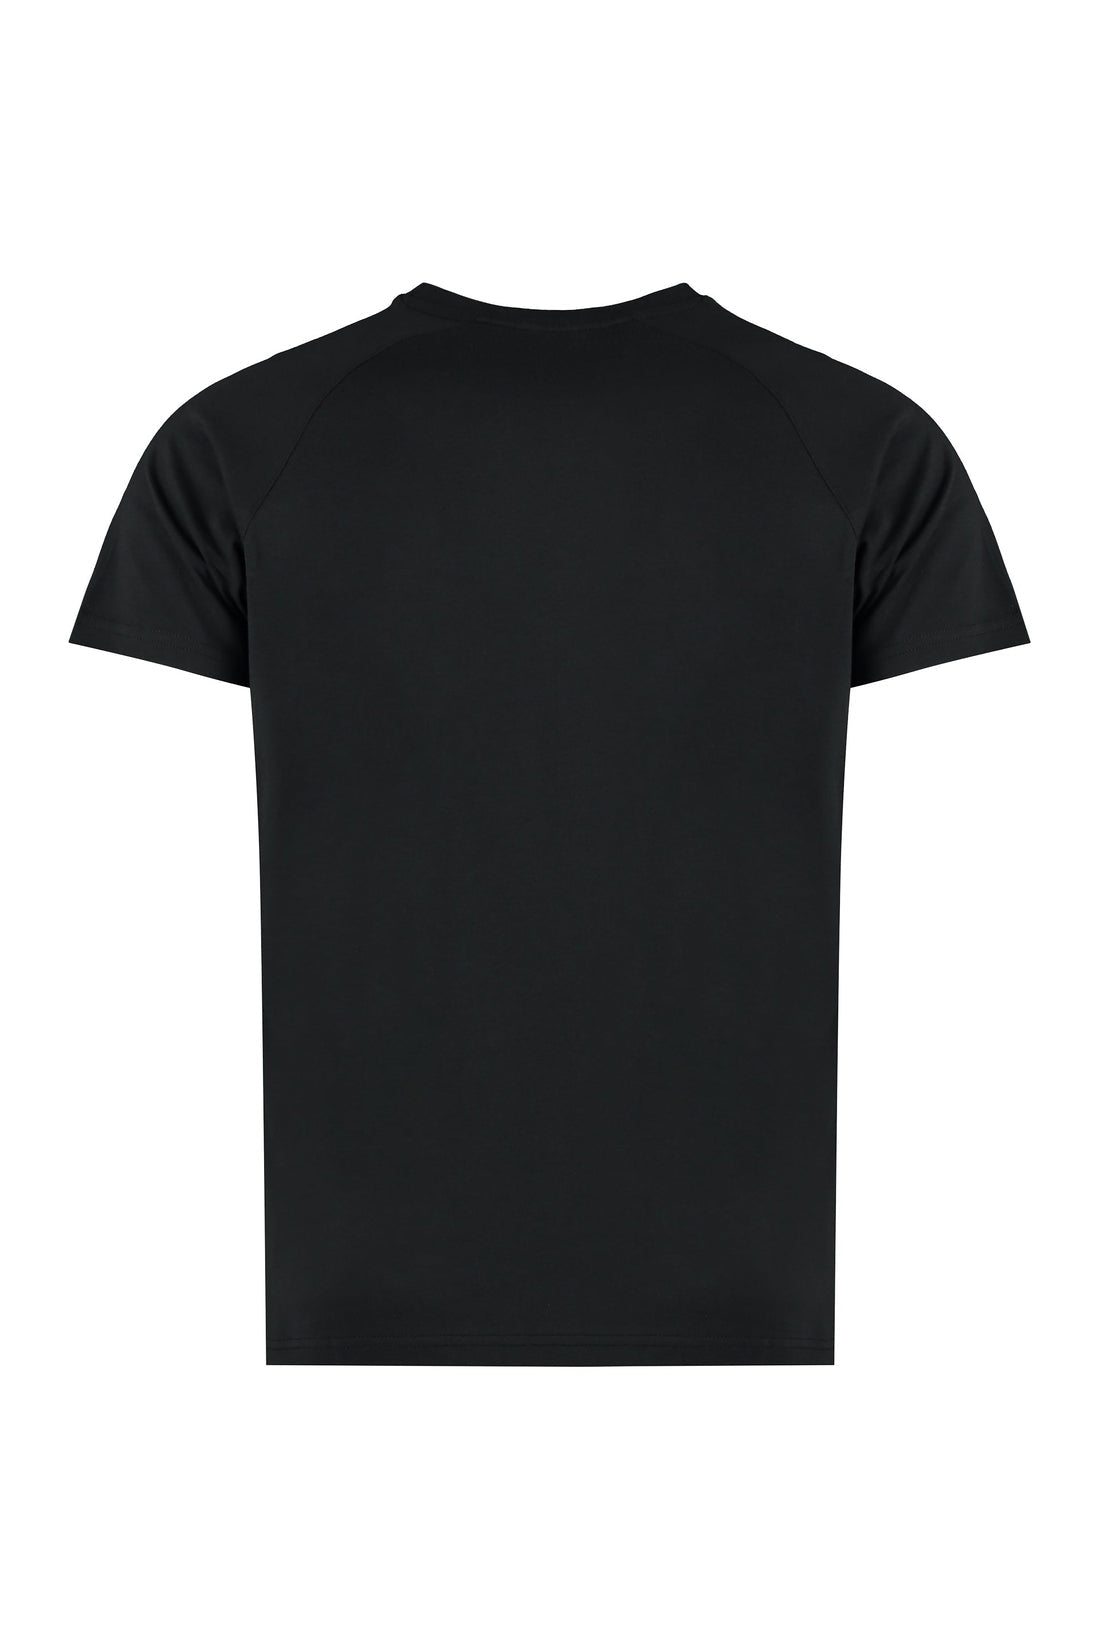 K-Way-OUTLET-SALE-Cotton T-shirt-ARCHIVIST